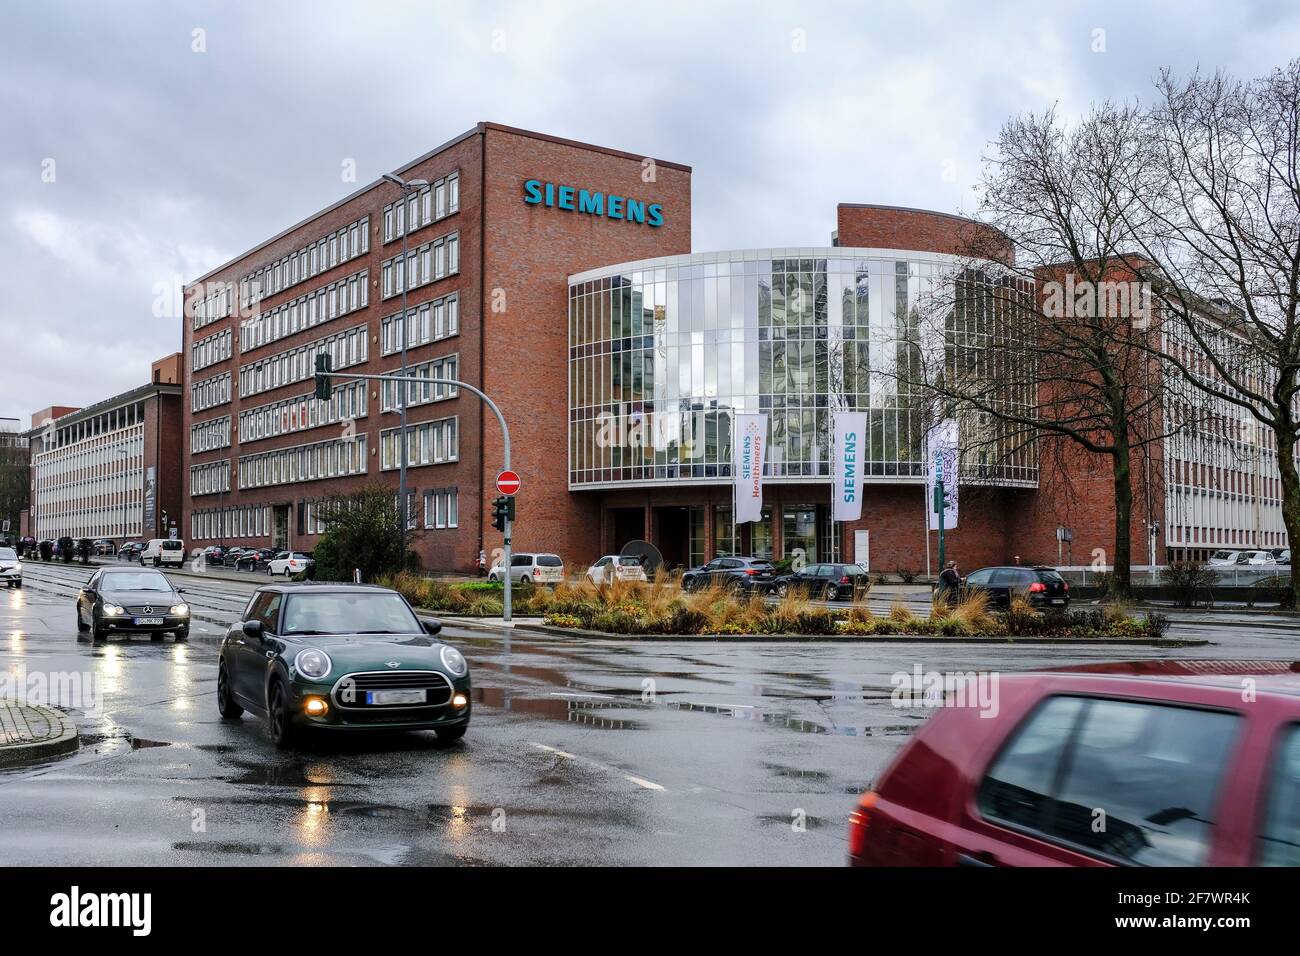 03.02.2021, Essen, Nordrhein-Westfalen, Deutschland - dunkle Wolken ueber der Siemens Niederlassung Ruhr in Essen Stock Photo